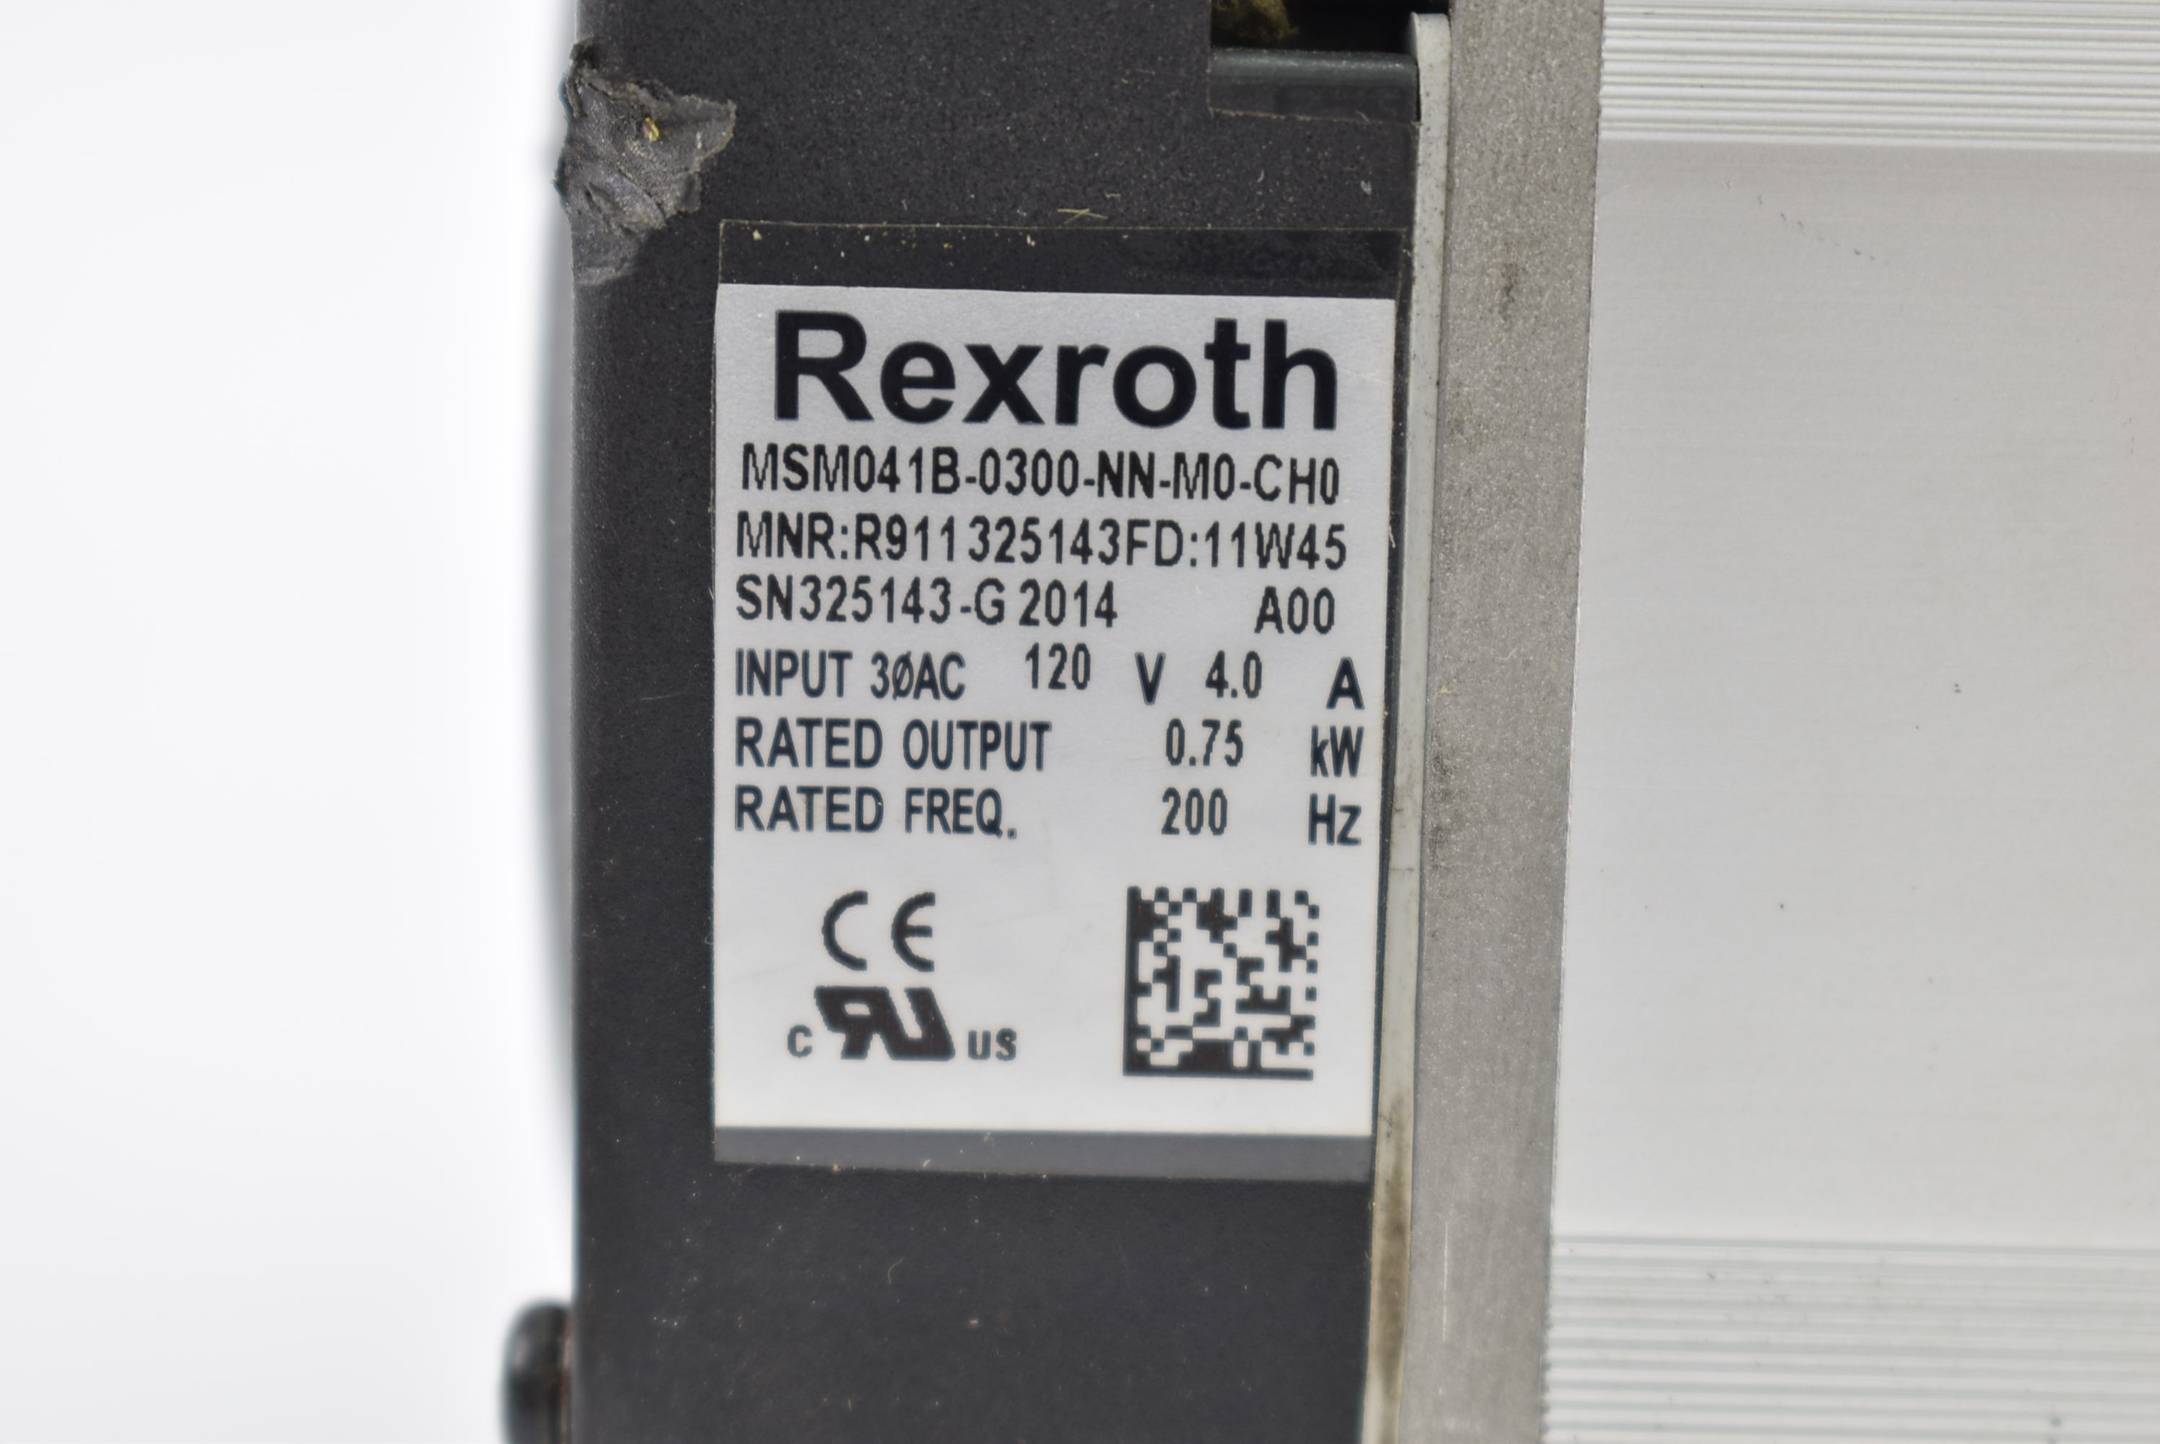 Rexroth Servomotor 120V 4,0A 0,75kW 200Hz MSM041B-0300-NN-M0-CH0 ( R911325143 )